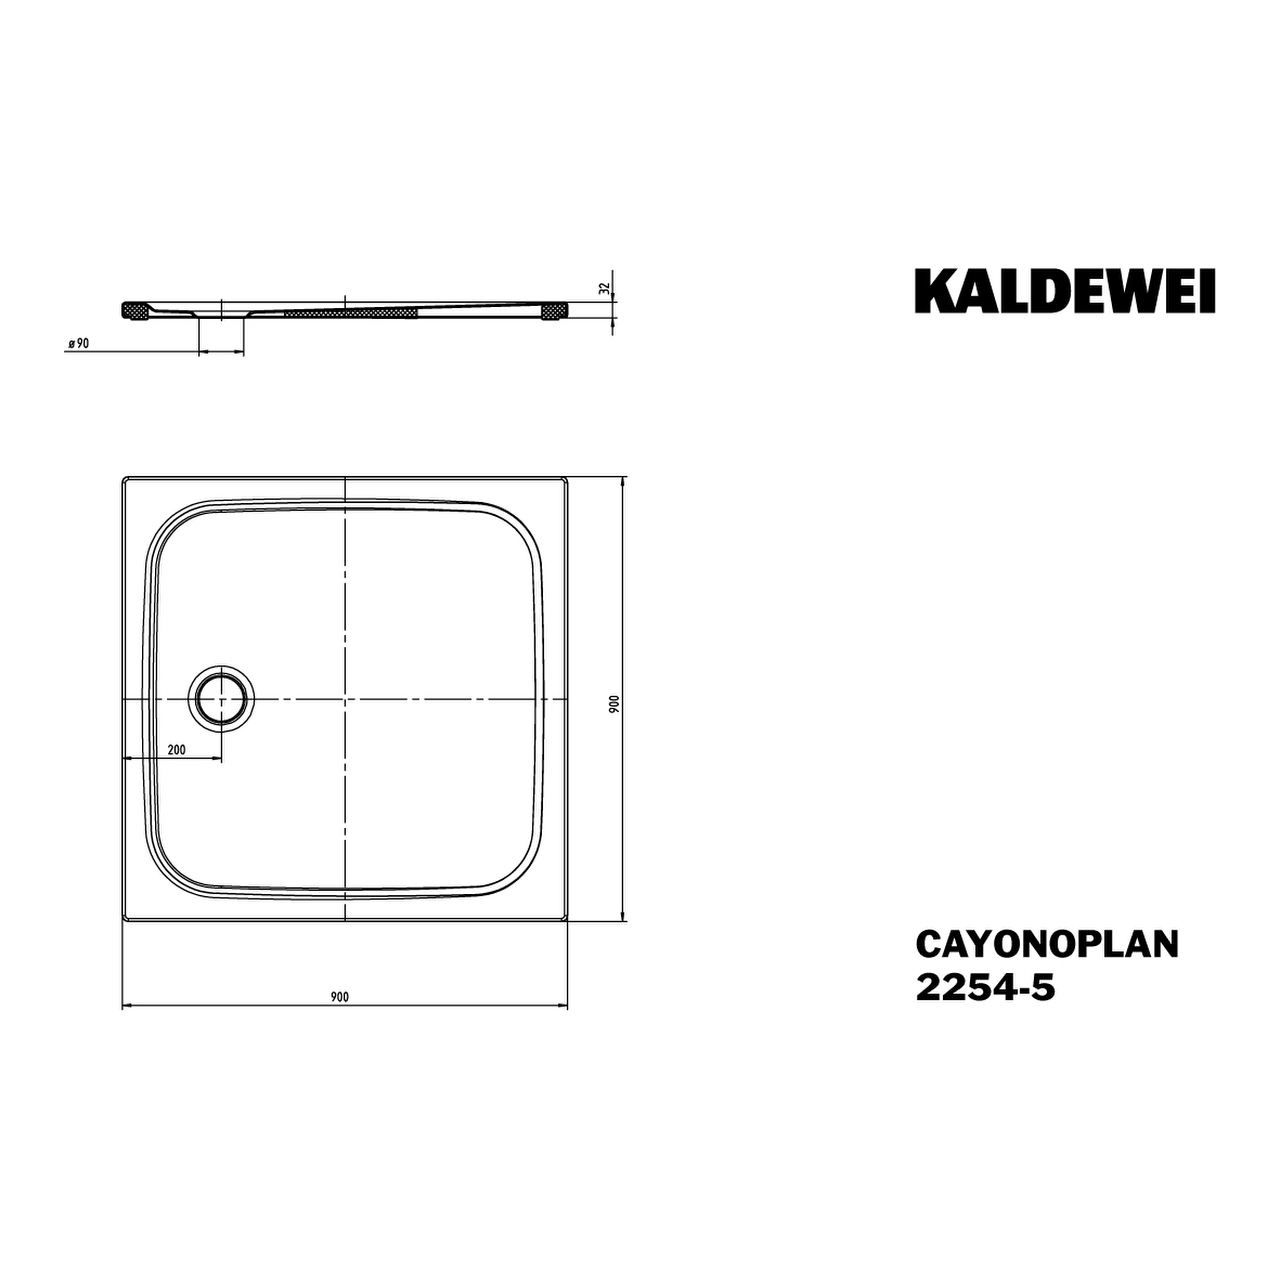 Kaldewei quadrat Duschwanne „Cayonoplan“ 90 × 90 cm in manhattan